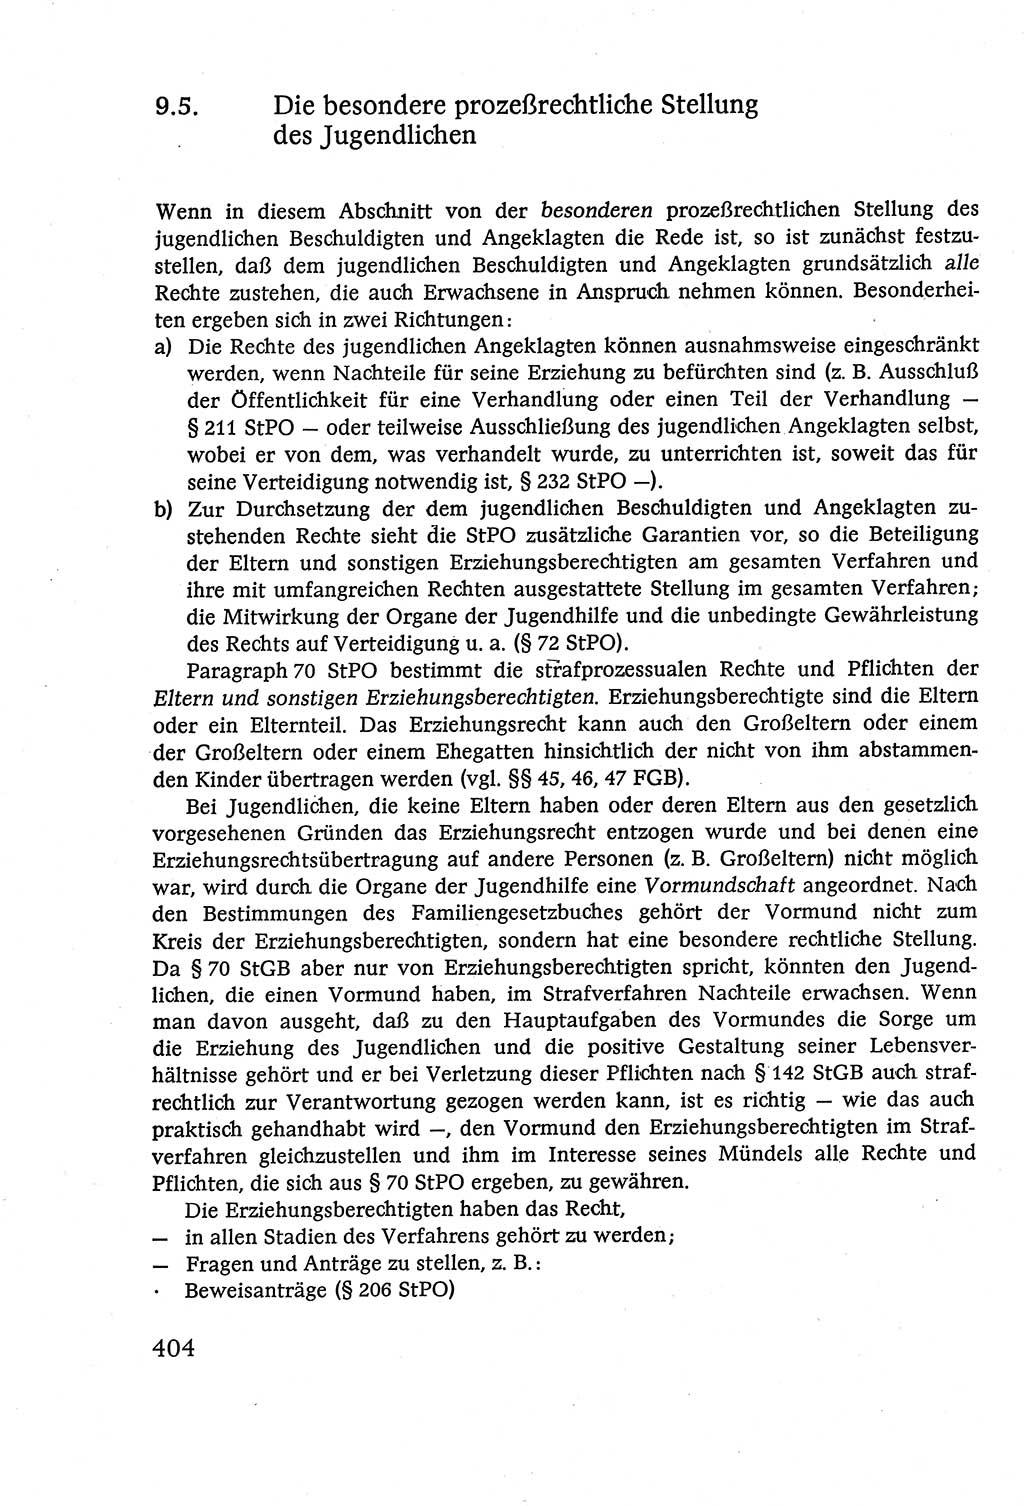 Strafverfahrensrecht [Deutsche Demokratische Republik (DDR)], Lehrbuch 1977, Seite 404 (Strafverf.-R. DDR Lb. 1977, S. 404)